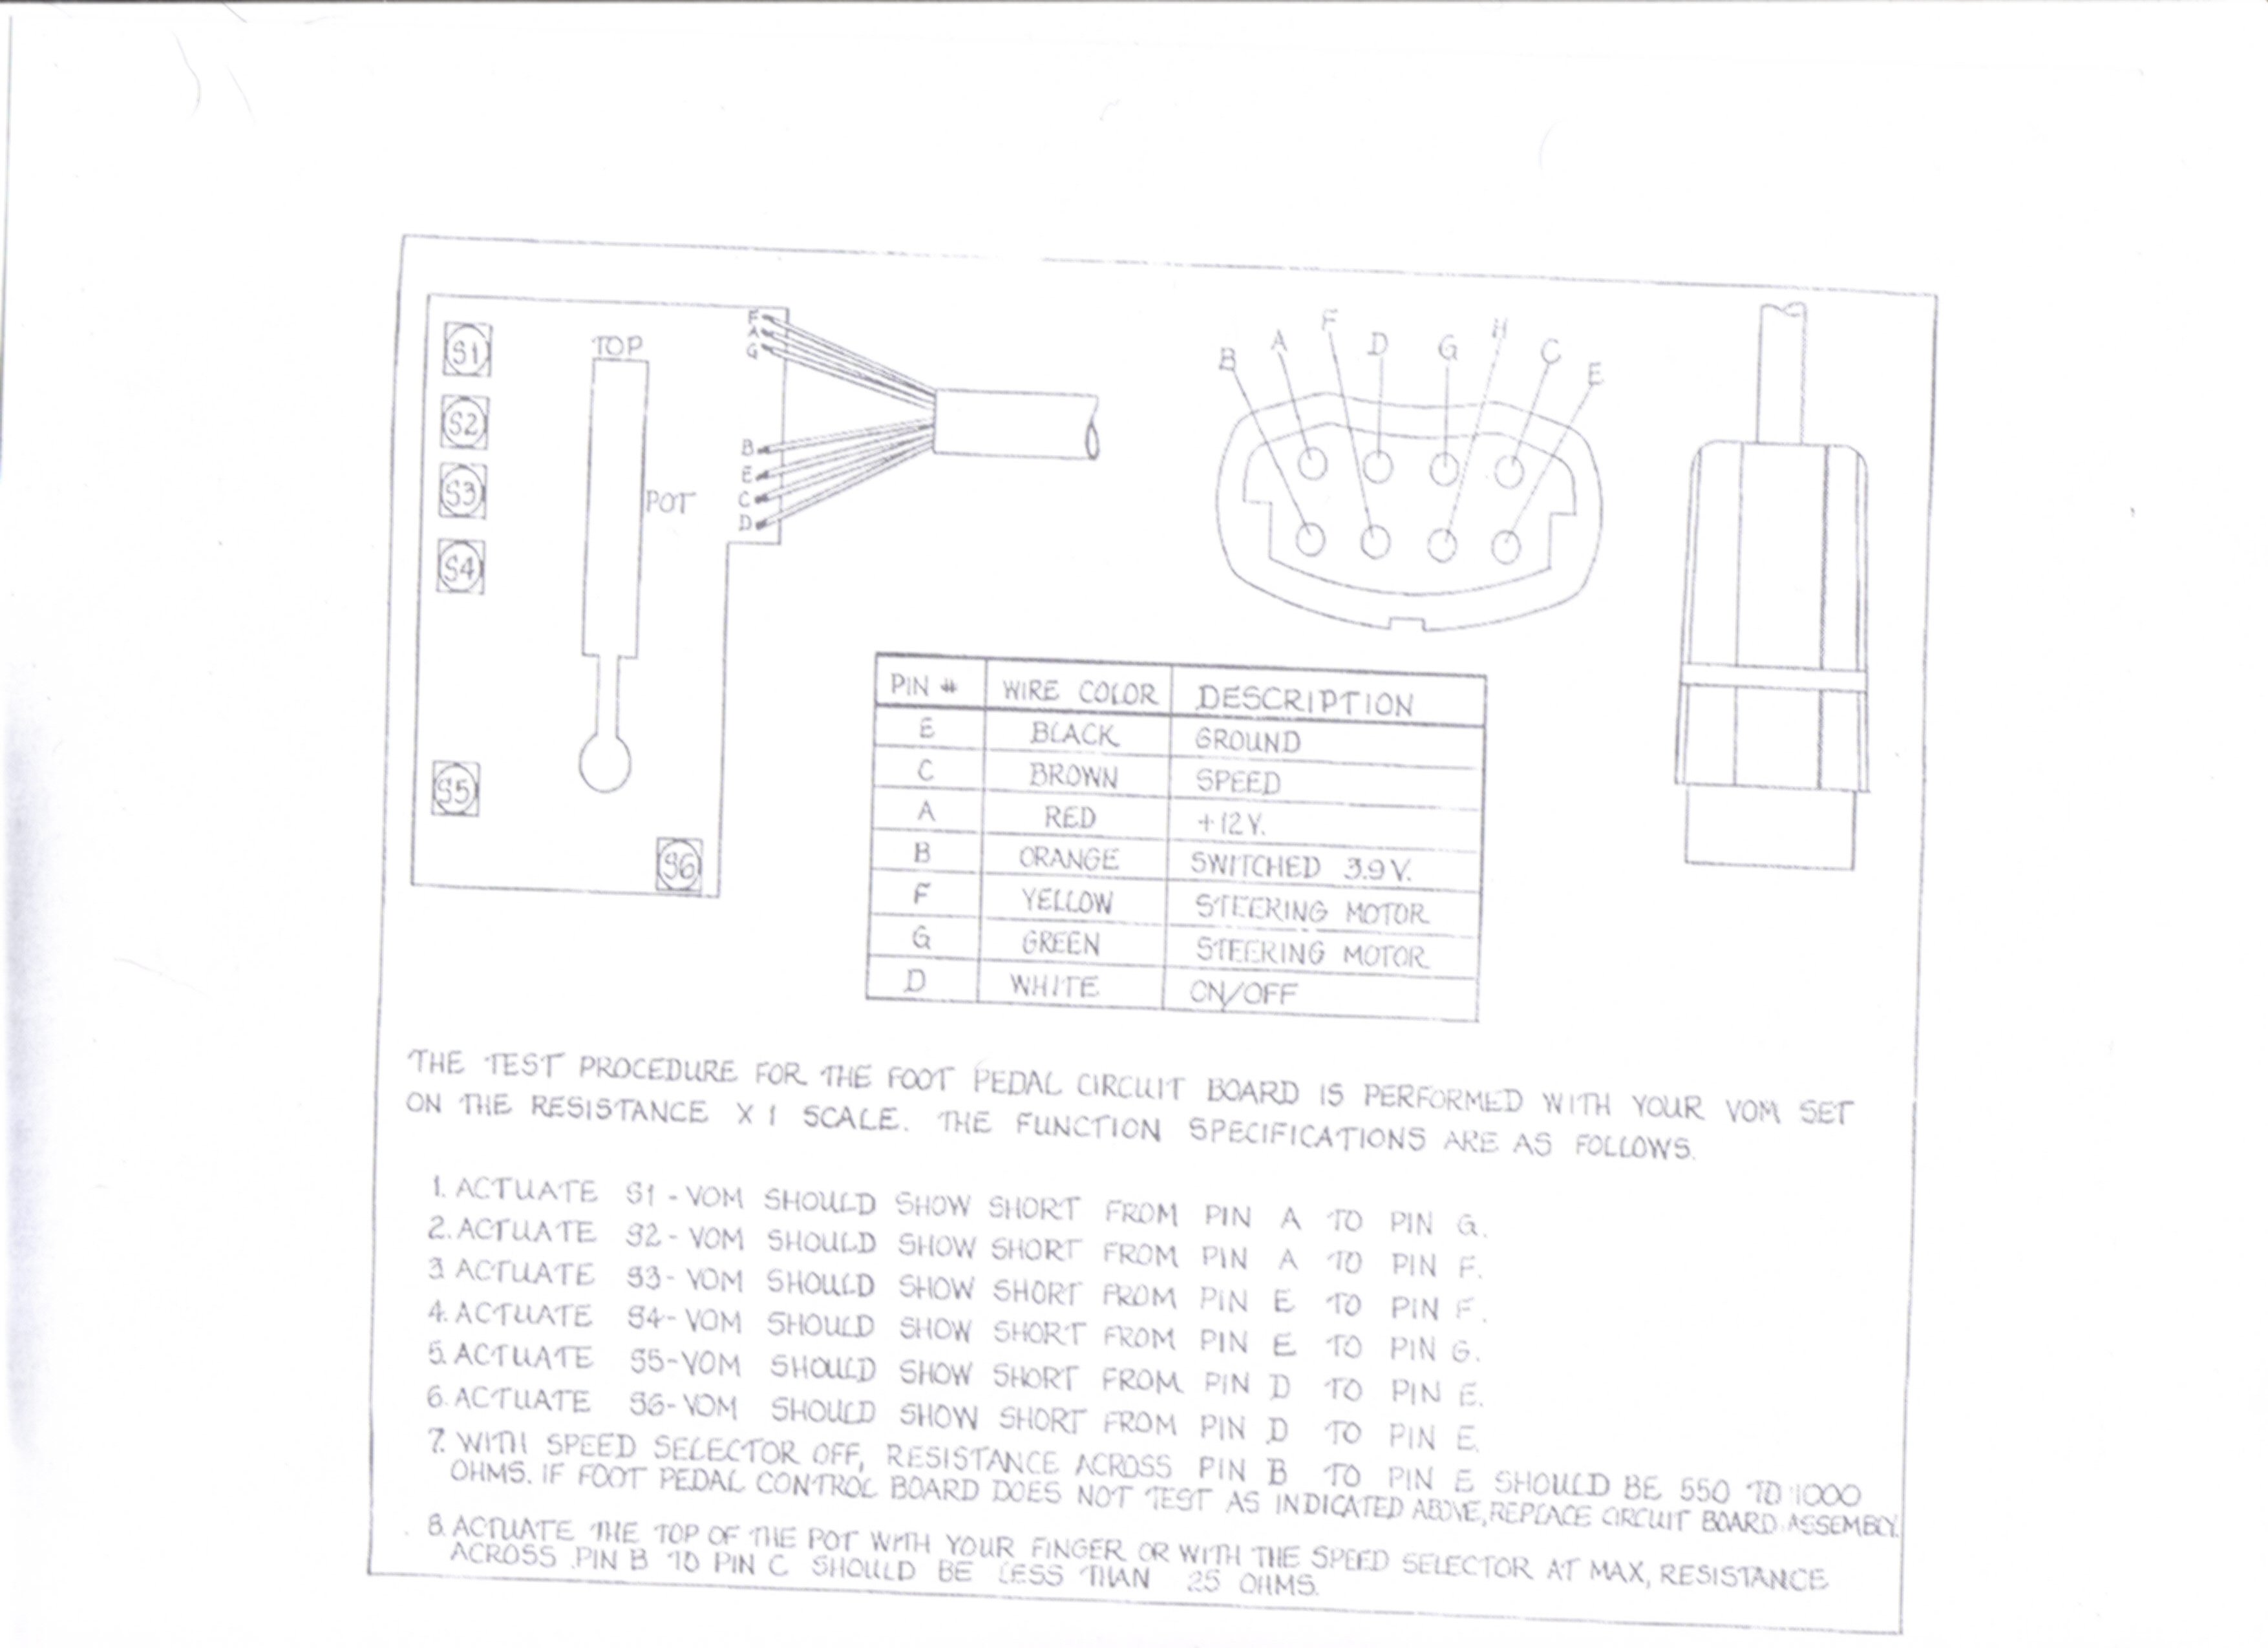 icn 4p32 n wiring diagram